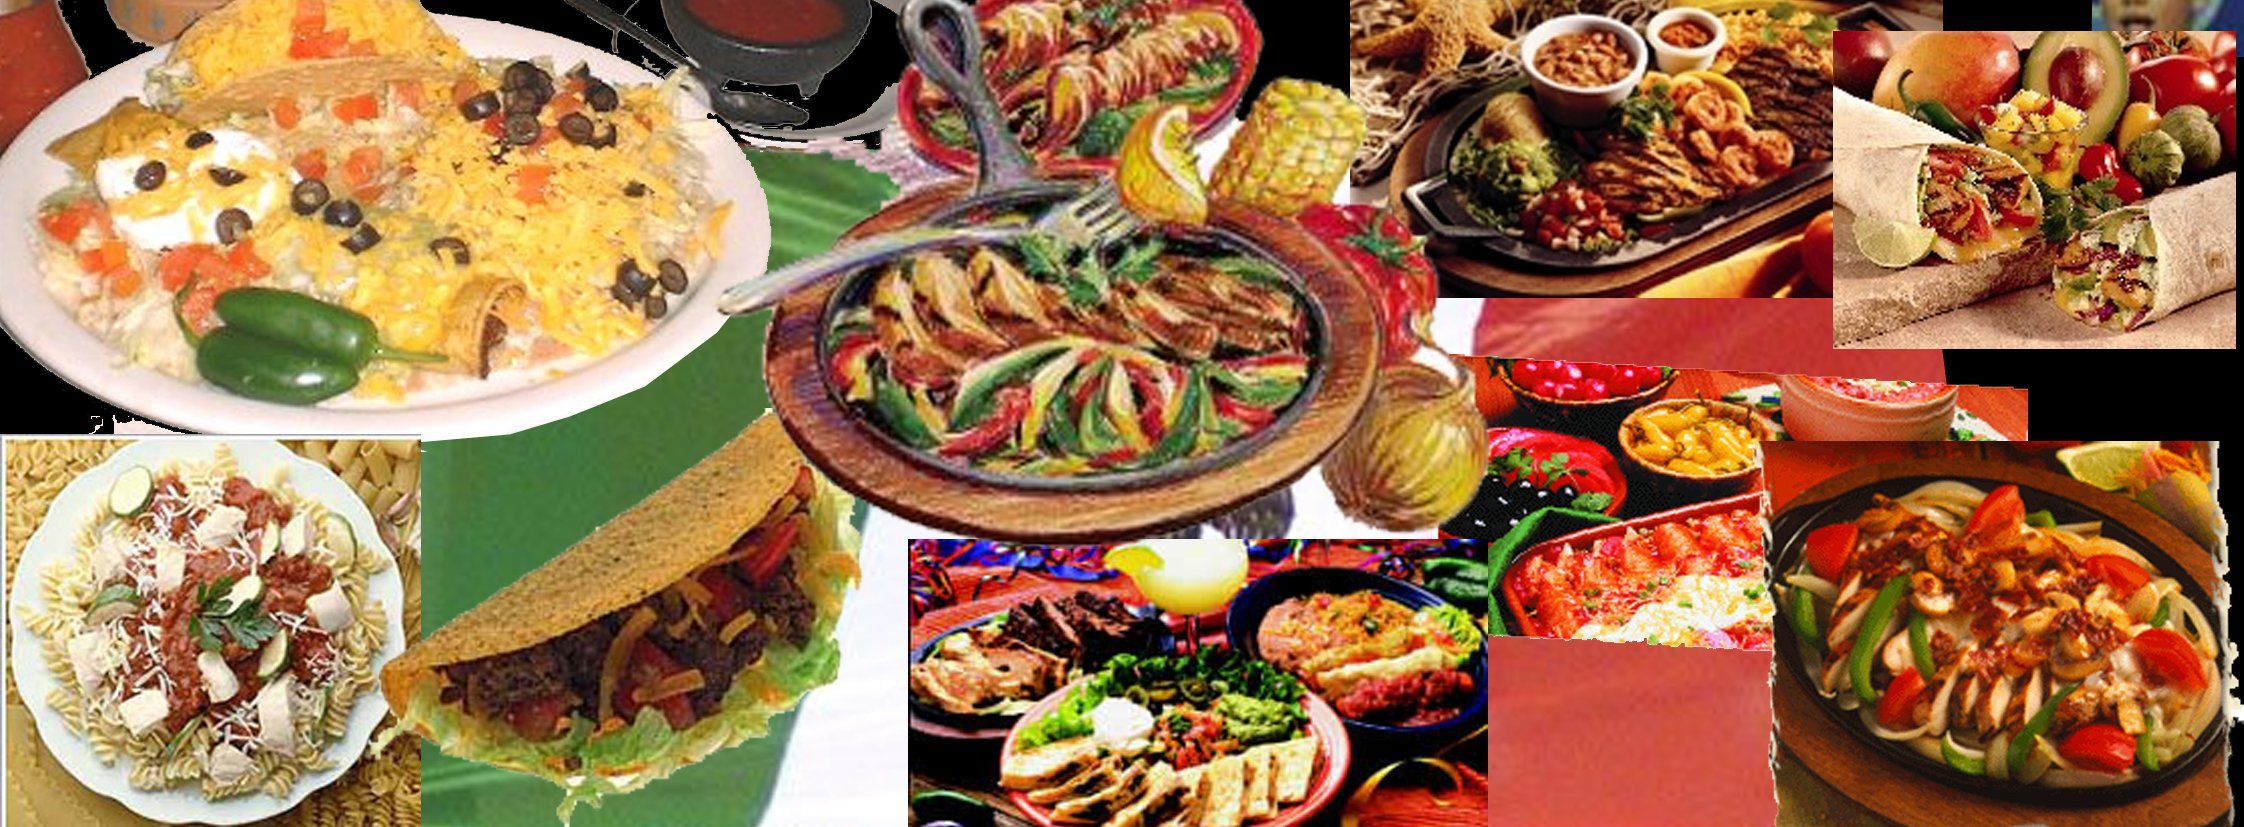 والپیپر انواع غذای مکزیکی با طعم های مختلف و خوشمزه 